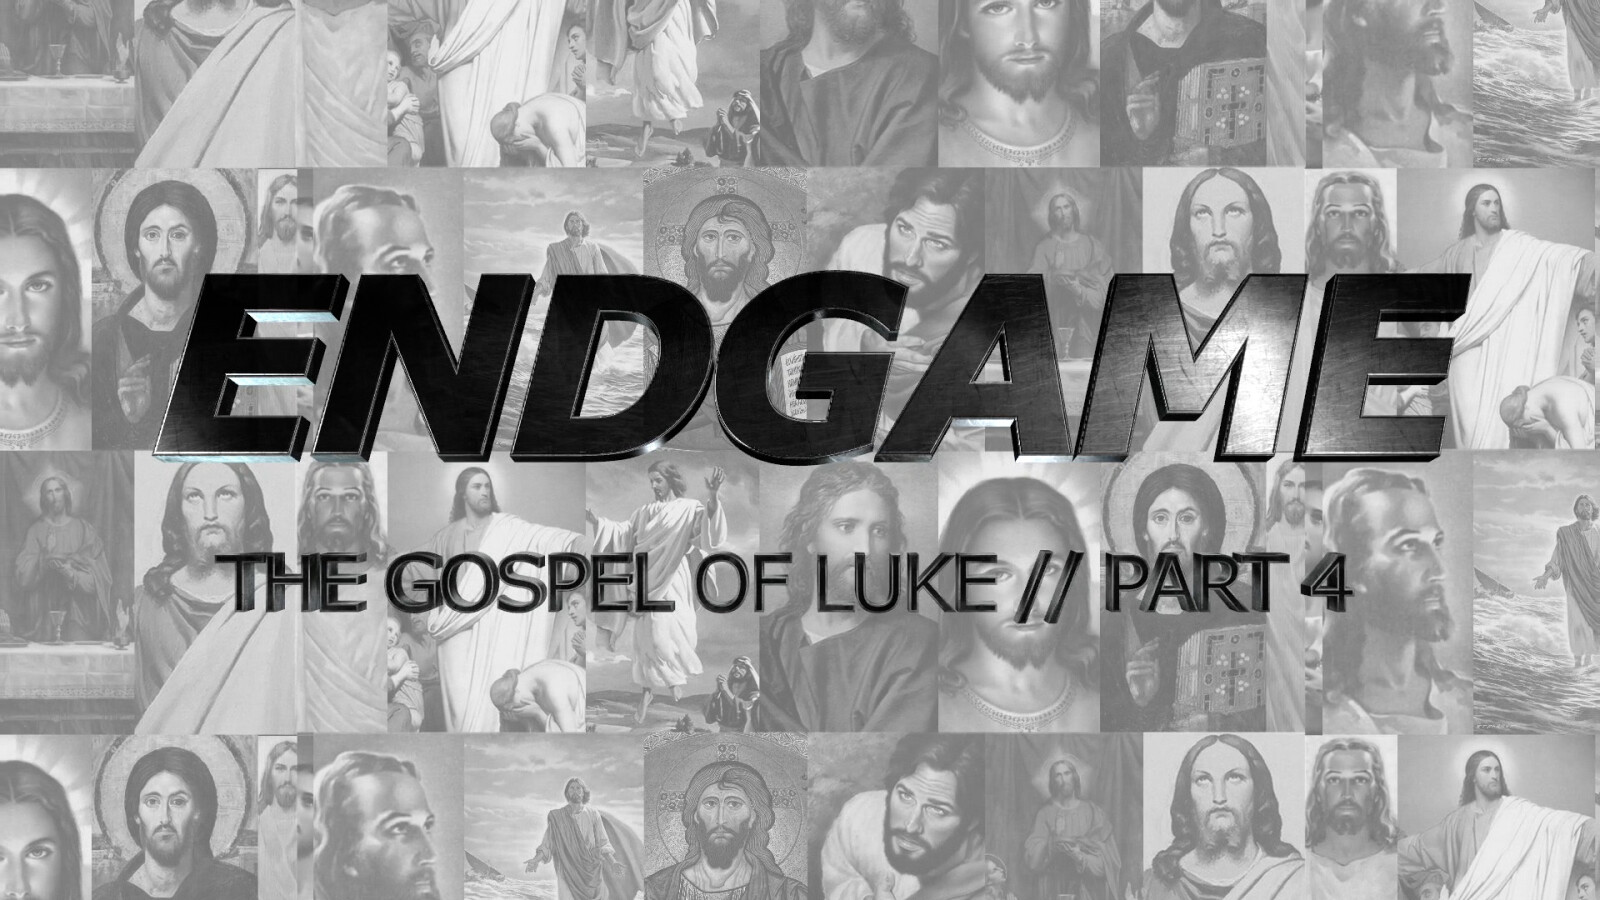 The Gospel of Luke, Part 4: Endgame